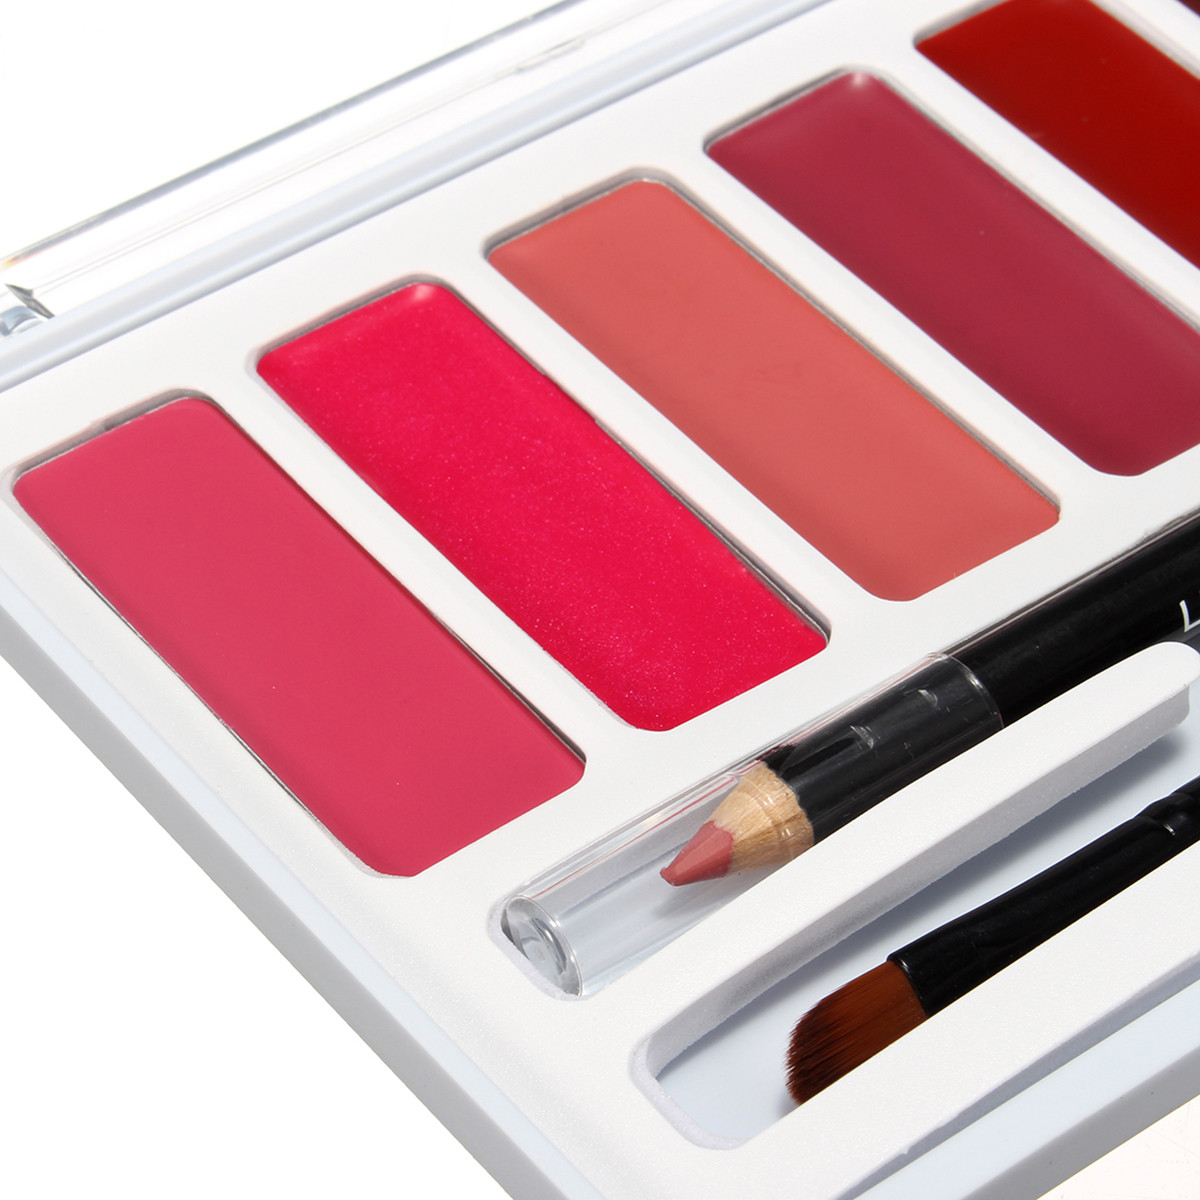 Makeup Palette 12 Colors Concealer Face Contour Cream 6 Colors Lipstick Lip Gloss Cosmetics Tool   